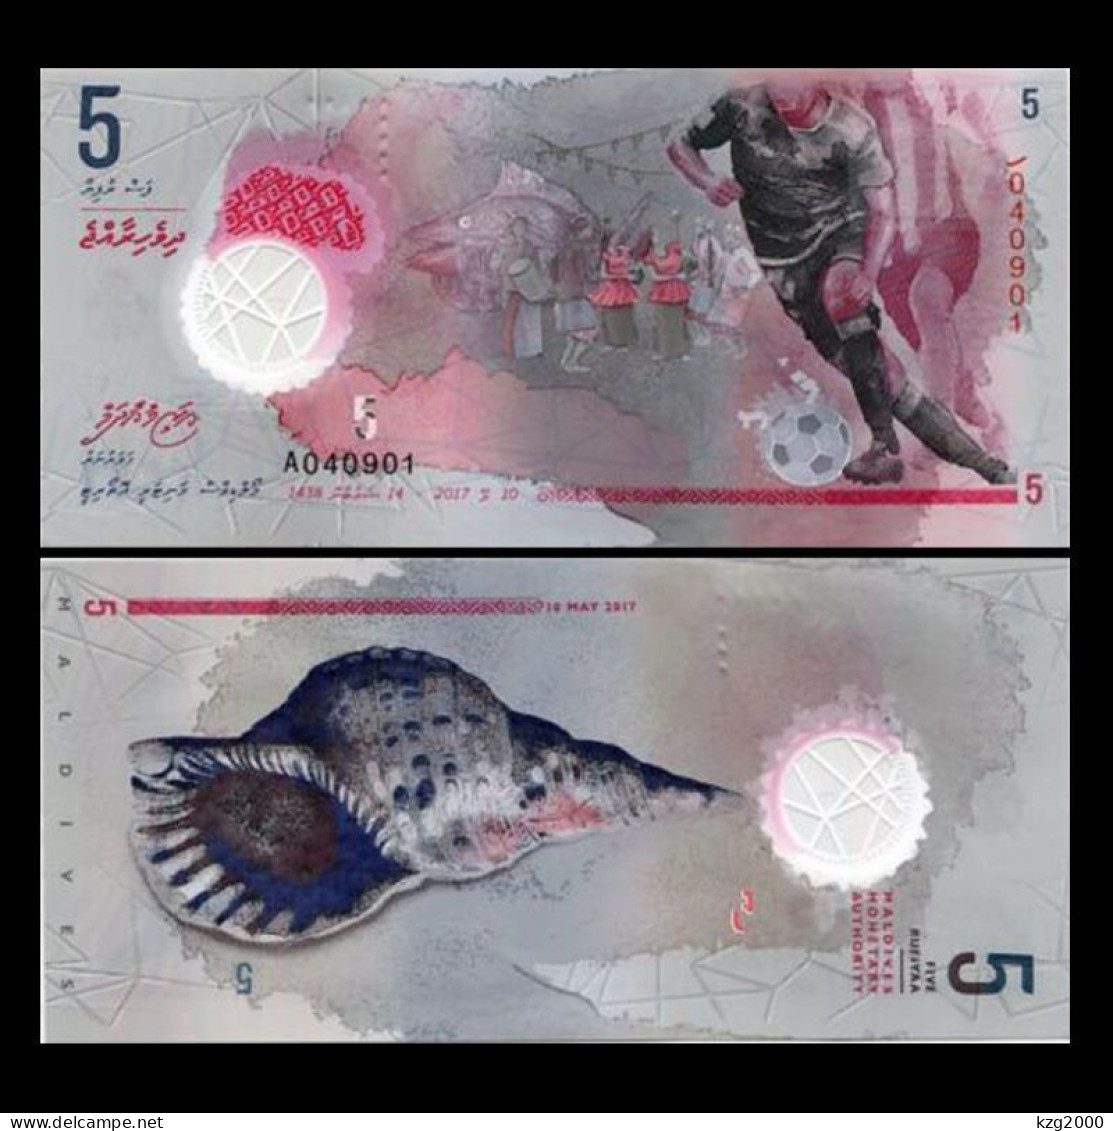 Maldives  2017  Plastic Banknotes Paper Money 5 Rufiyaa Polymer  UNC 1Pcs Banknote - Maldives